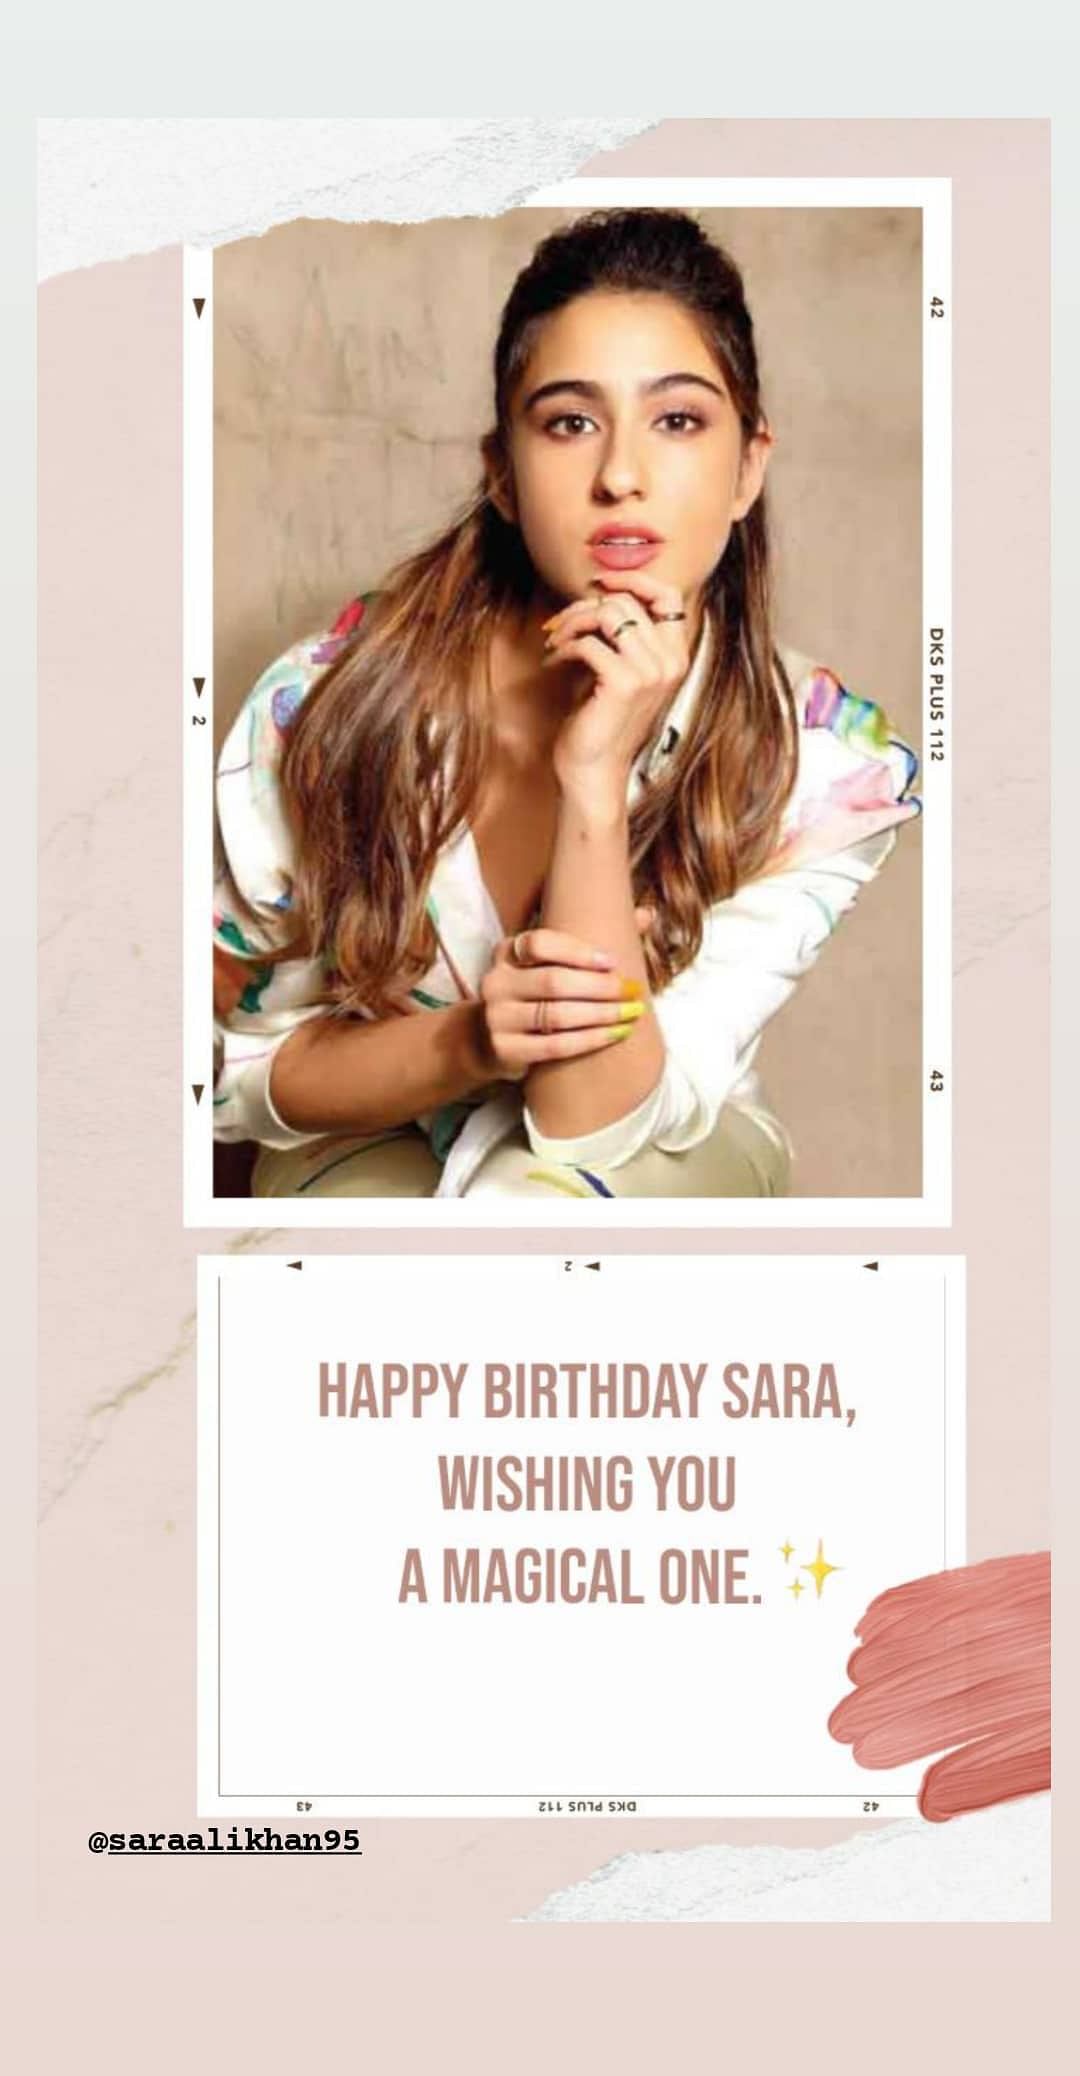 Sara rang in her birthday in Goa. 